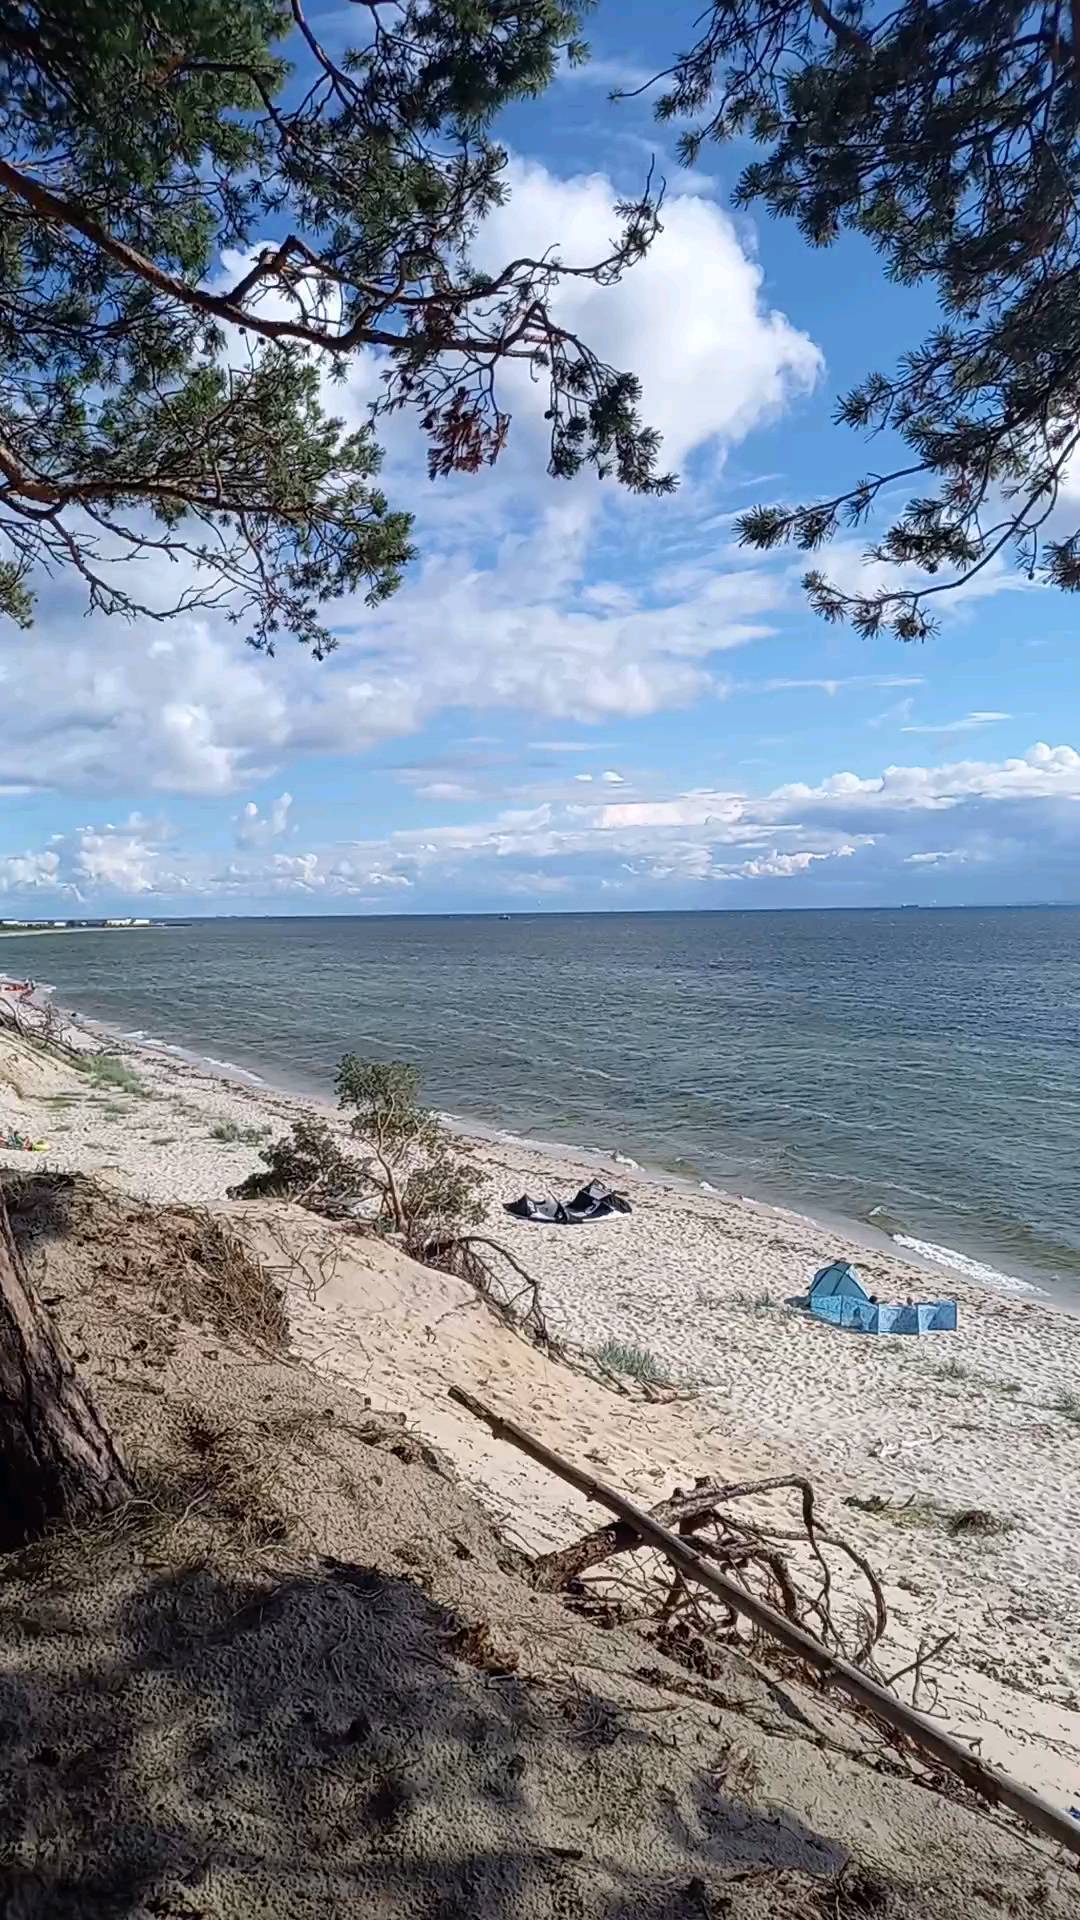 Piasek+morze+słońce=wspaniałe wakacje 🏖 kocham Bałtyk a Półwysep Helski to zdecydowanie moje miejsce na Ziemi 🌍 cieszę się, że w tym roku udało mi się tam wrócić po kilku latach przerwy, i że miłością do campingowego życia 🚐 i pasją do windsurfingu 🏄‍♀️ zaraziłam resztę rodziny👨‍👩‍👦‍👦 za rok wracamy na @camping_kormoran 💟 a jeśli szukasz spokojnego, rodzinnego miejsca na Półwyspie, koniecznie sprawdź ich ofertę ☝️
Jaki jest Twój przepis na udane wakacje? 🌞

#vitaminsea #wakacje2022 #wakacjenadmorzem #campinglife⛺ #wakacjewprzyczepie #dziewczynaznadmorza #balticsea #bałtyk🌊 #polwysephelski #urlopwkraju #urlopwpolsce #polskiemorze #rodzinnewakacje #wakacjezdziećmi #urlopzdziećmi